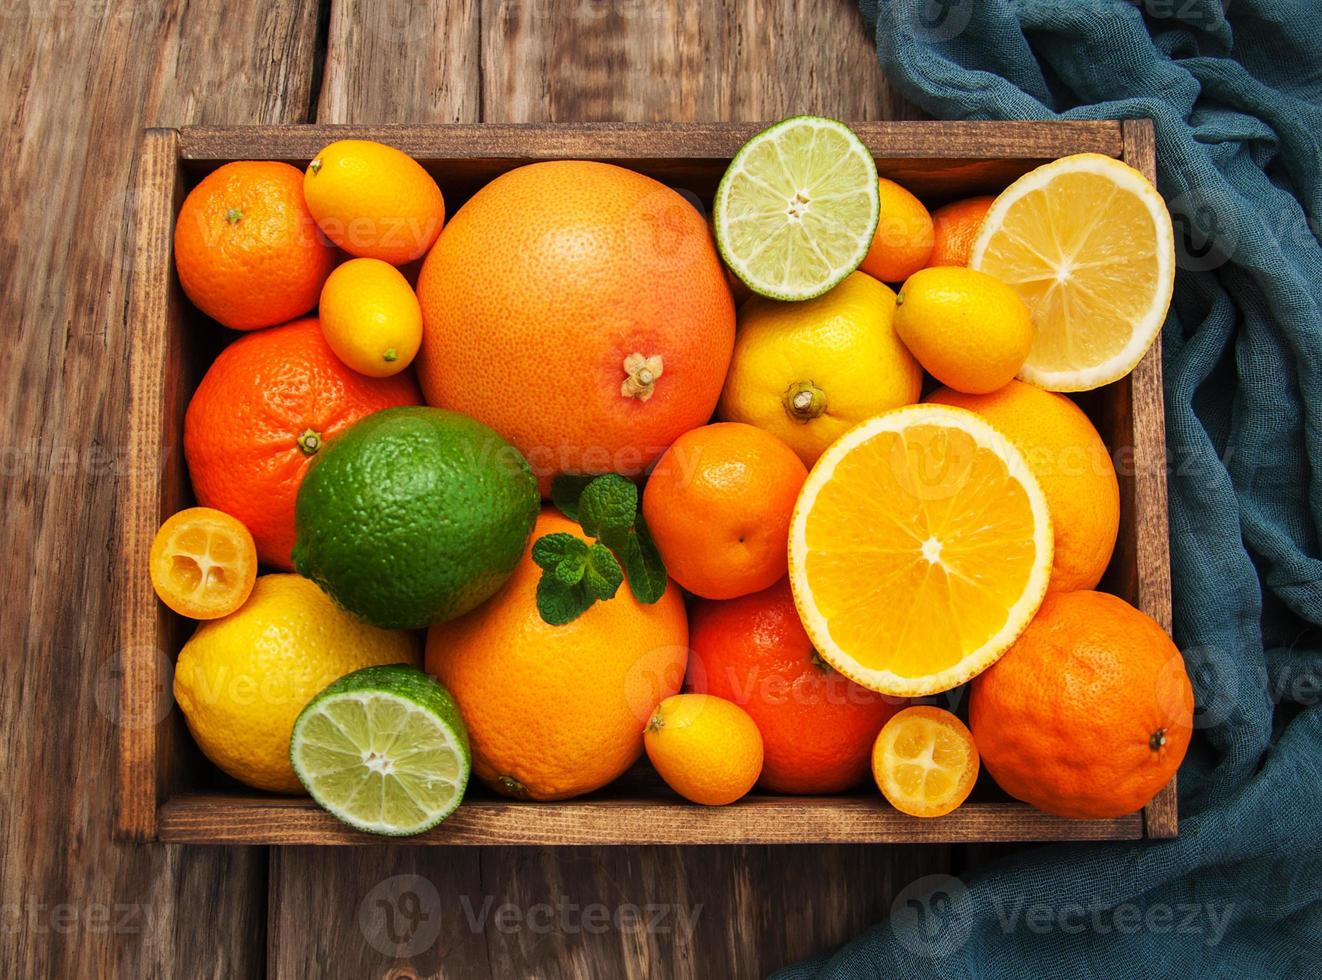 frutas cítricas frescas foto